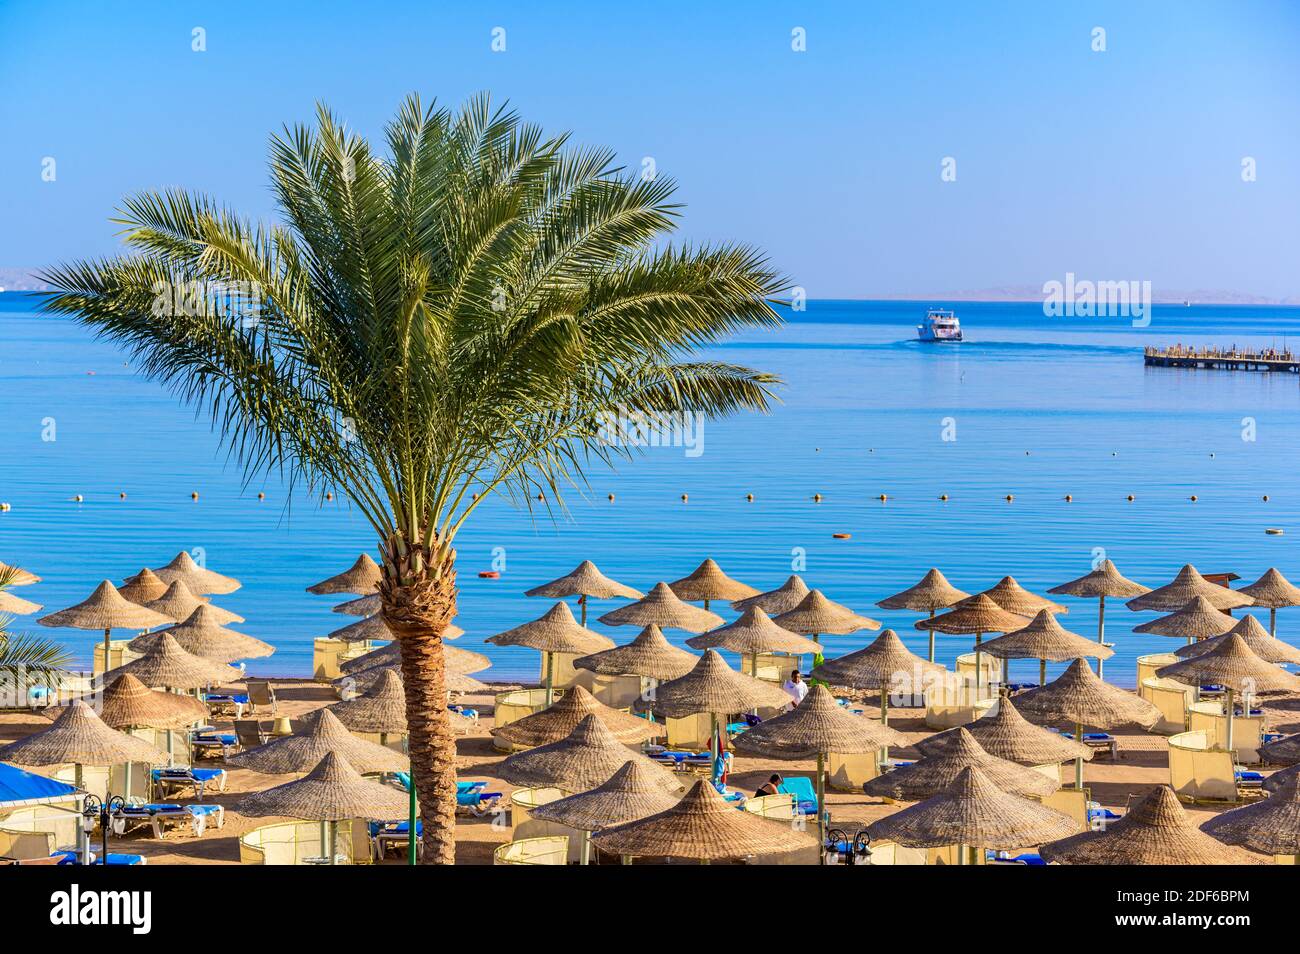 Entspannung am paradiesischen Strand - Chaise Lounge und Sonnenschirme - Reiseziel Hurghada, Ägypten Stockfoto